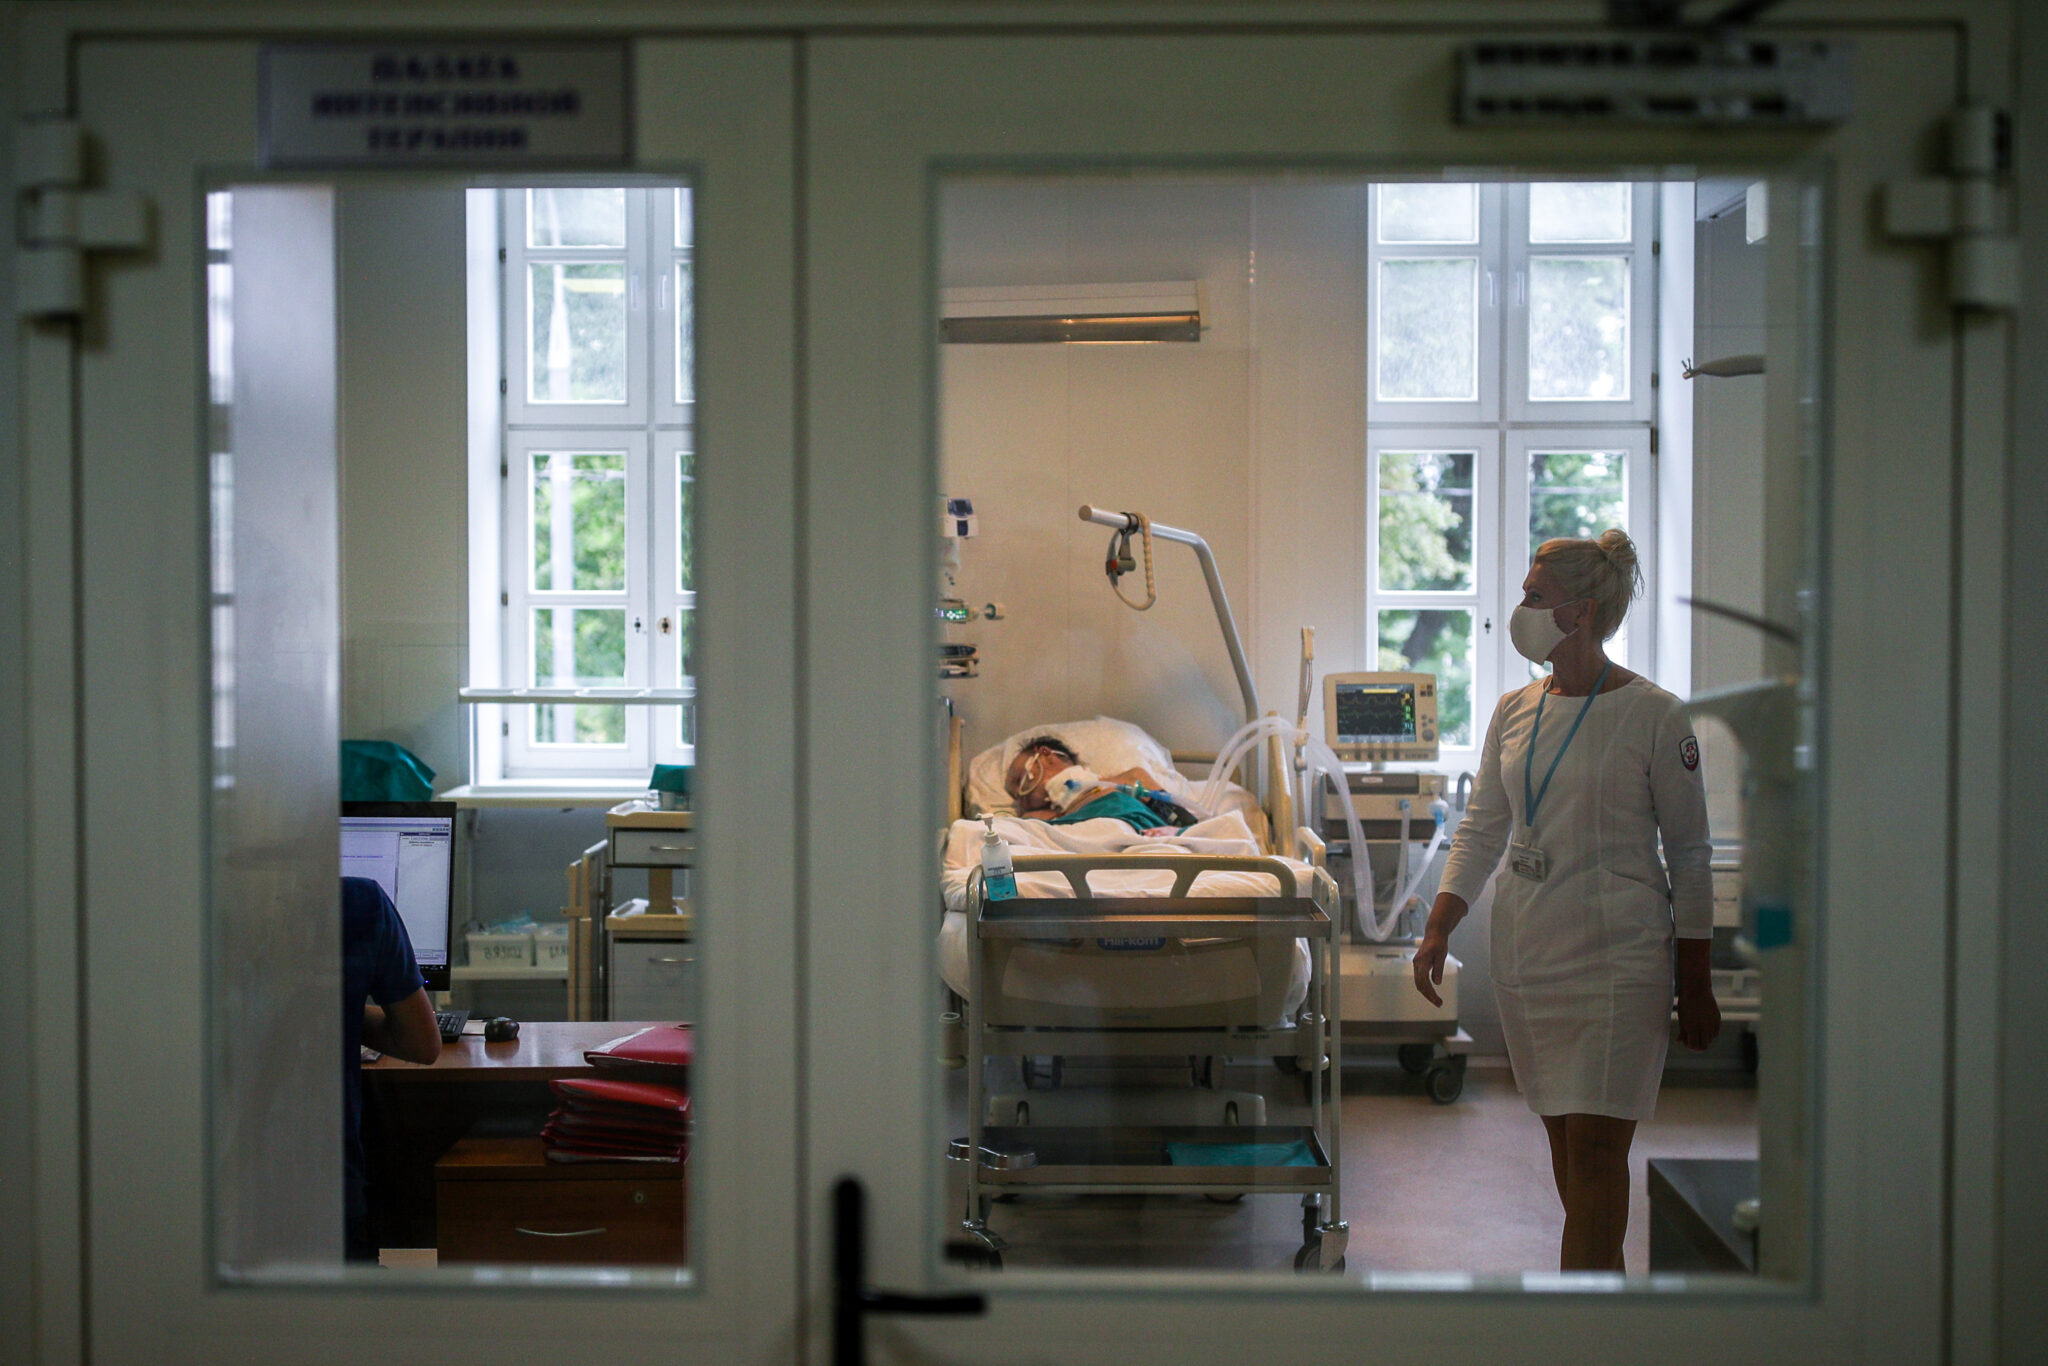 Реанимация в пироговской больнице в Москве. Фото Sergei Bobylev/TASS/Scanpix/Leta